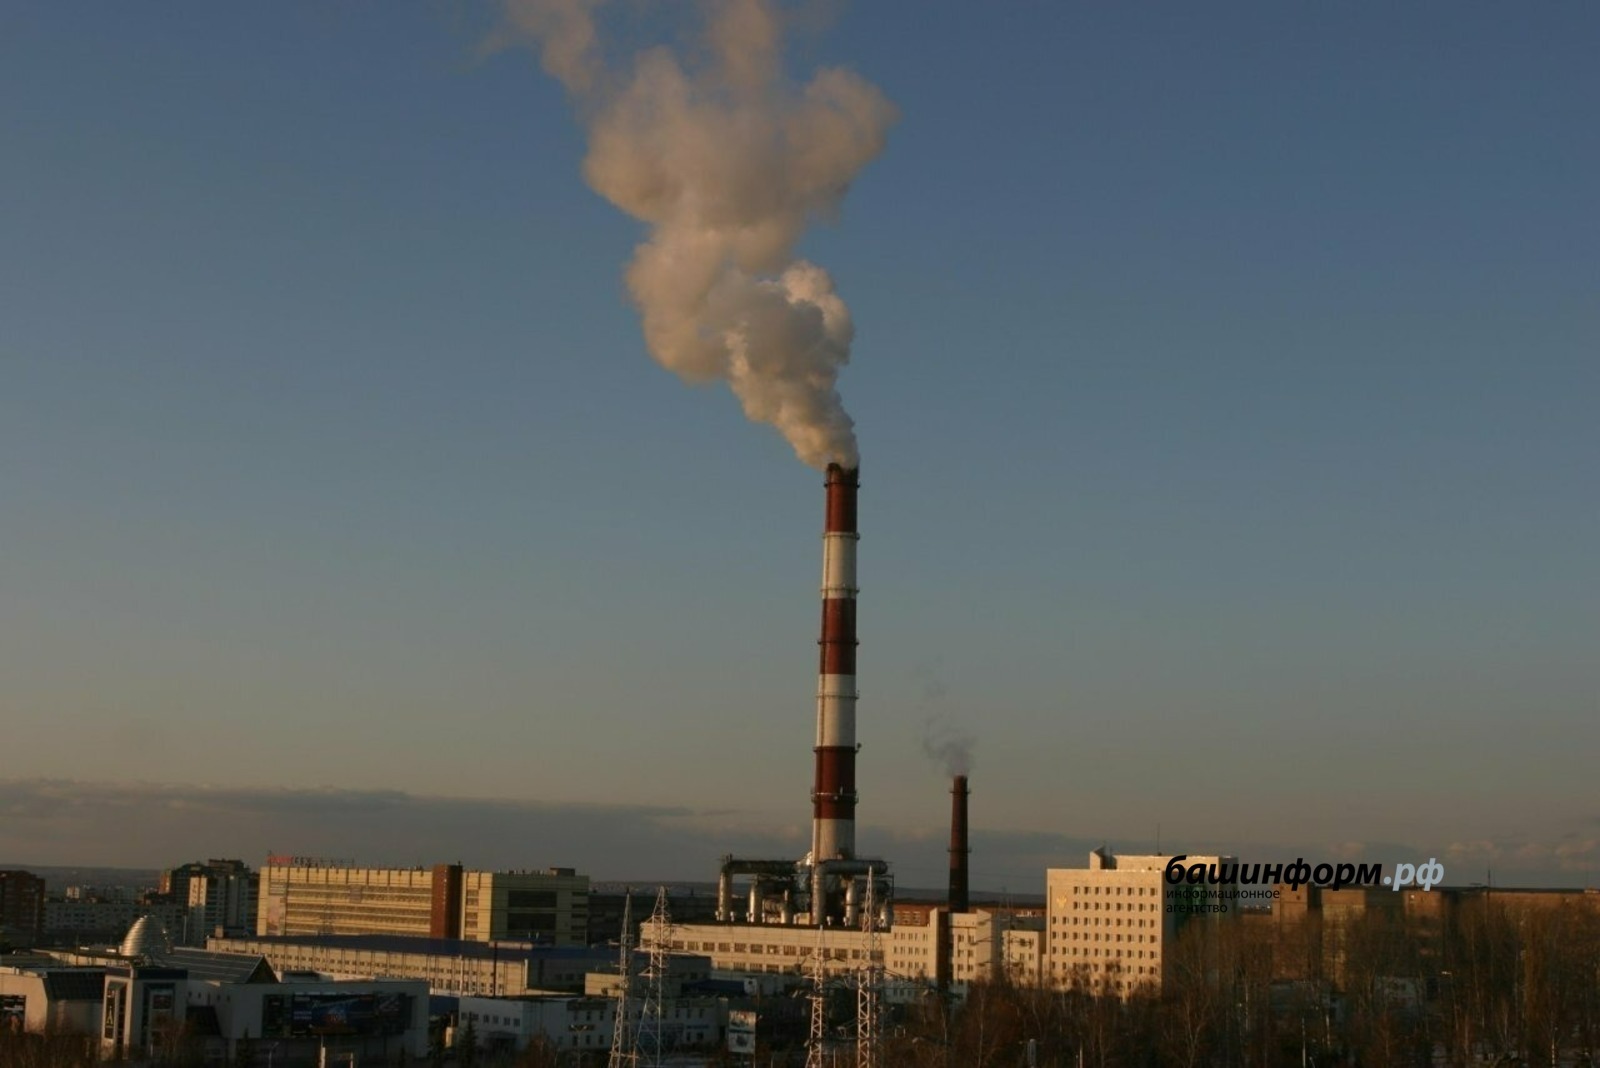 БСК снизила объем атмосферных выбросов в Башкирии более чем на 217 тонн